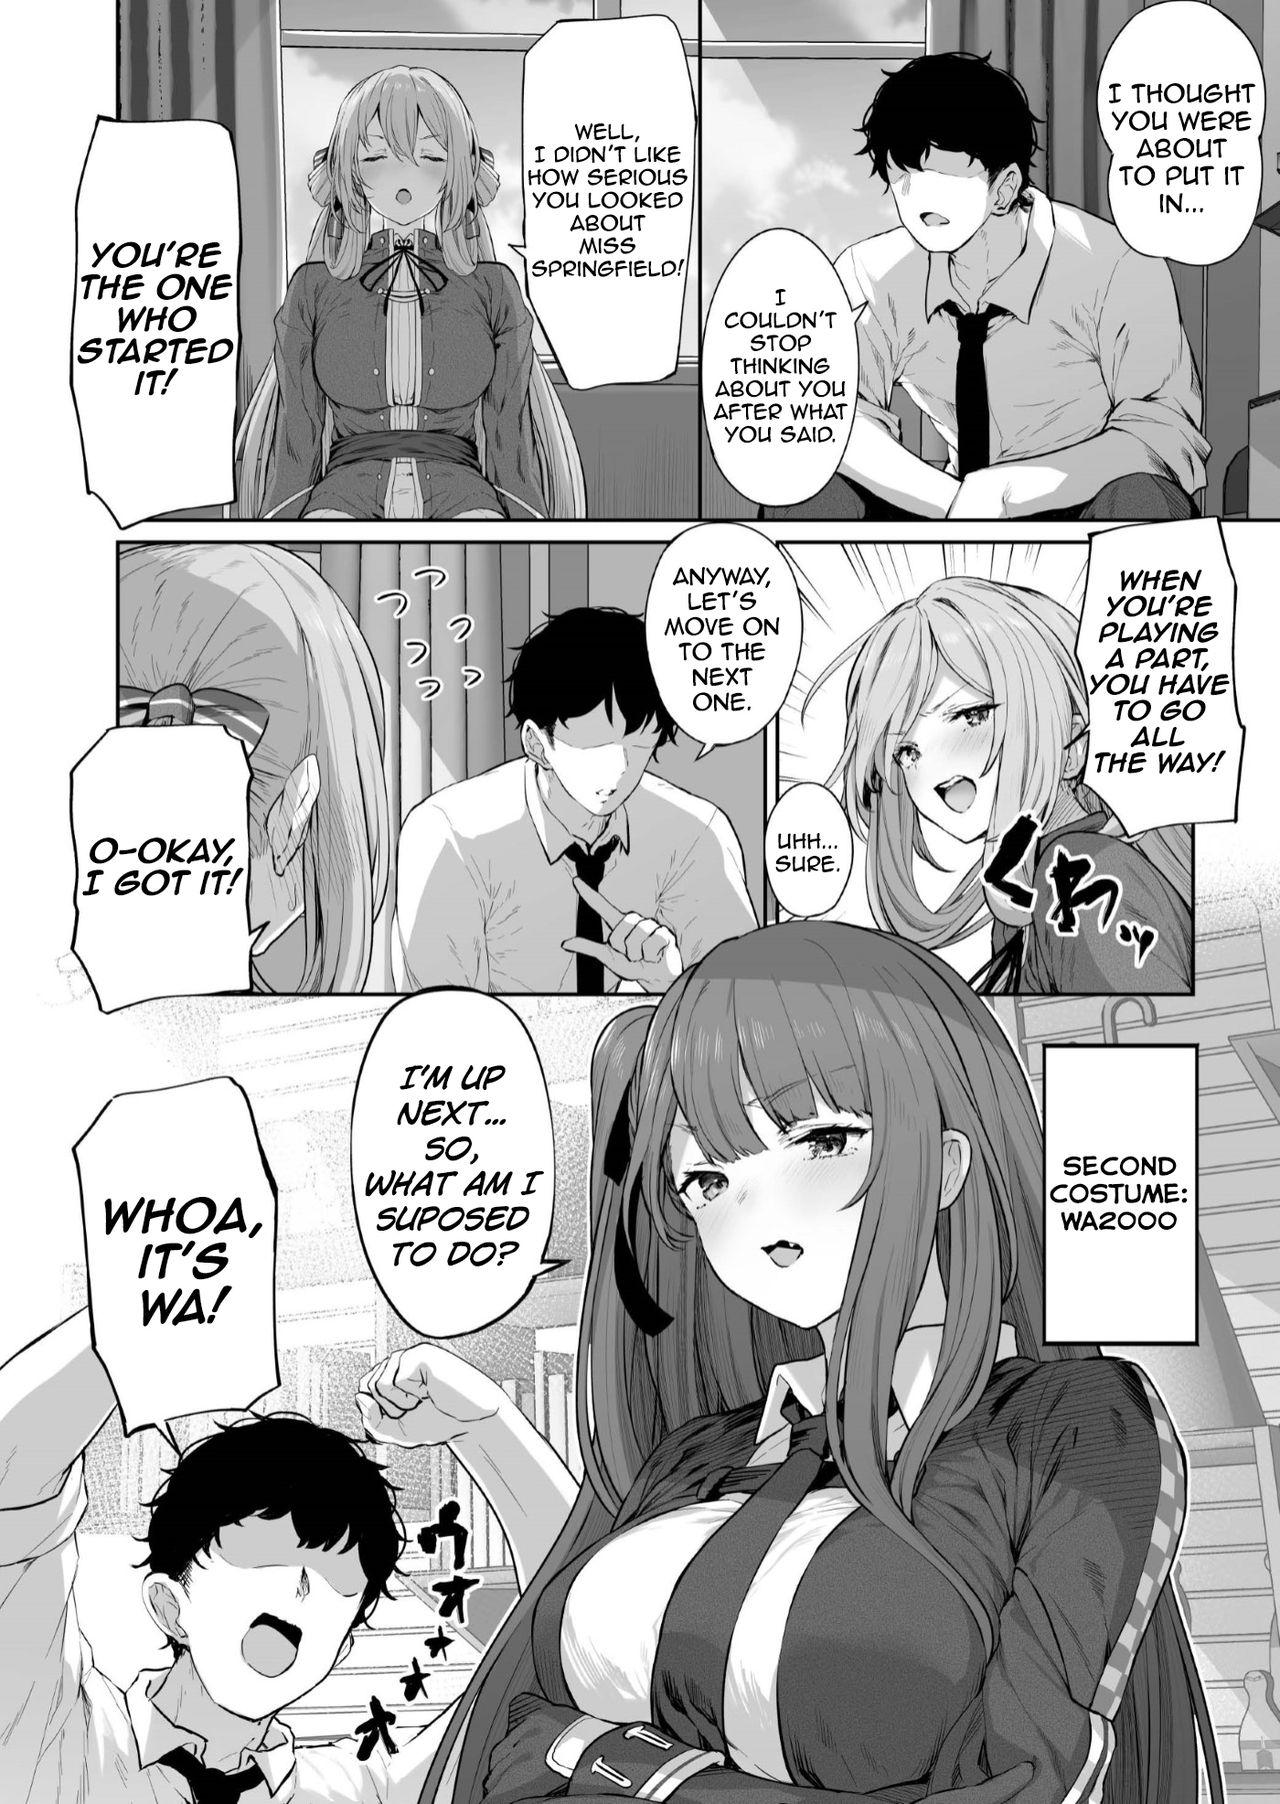 Pussy Licking Yuiitsu Muni no Mono nan Dakara - Girls frontline Bdsm - Page 10